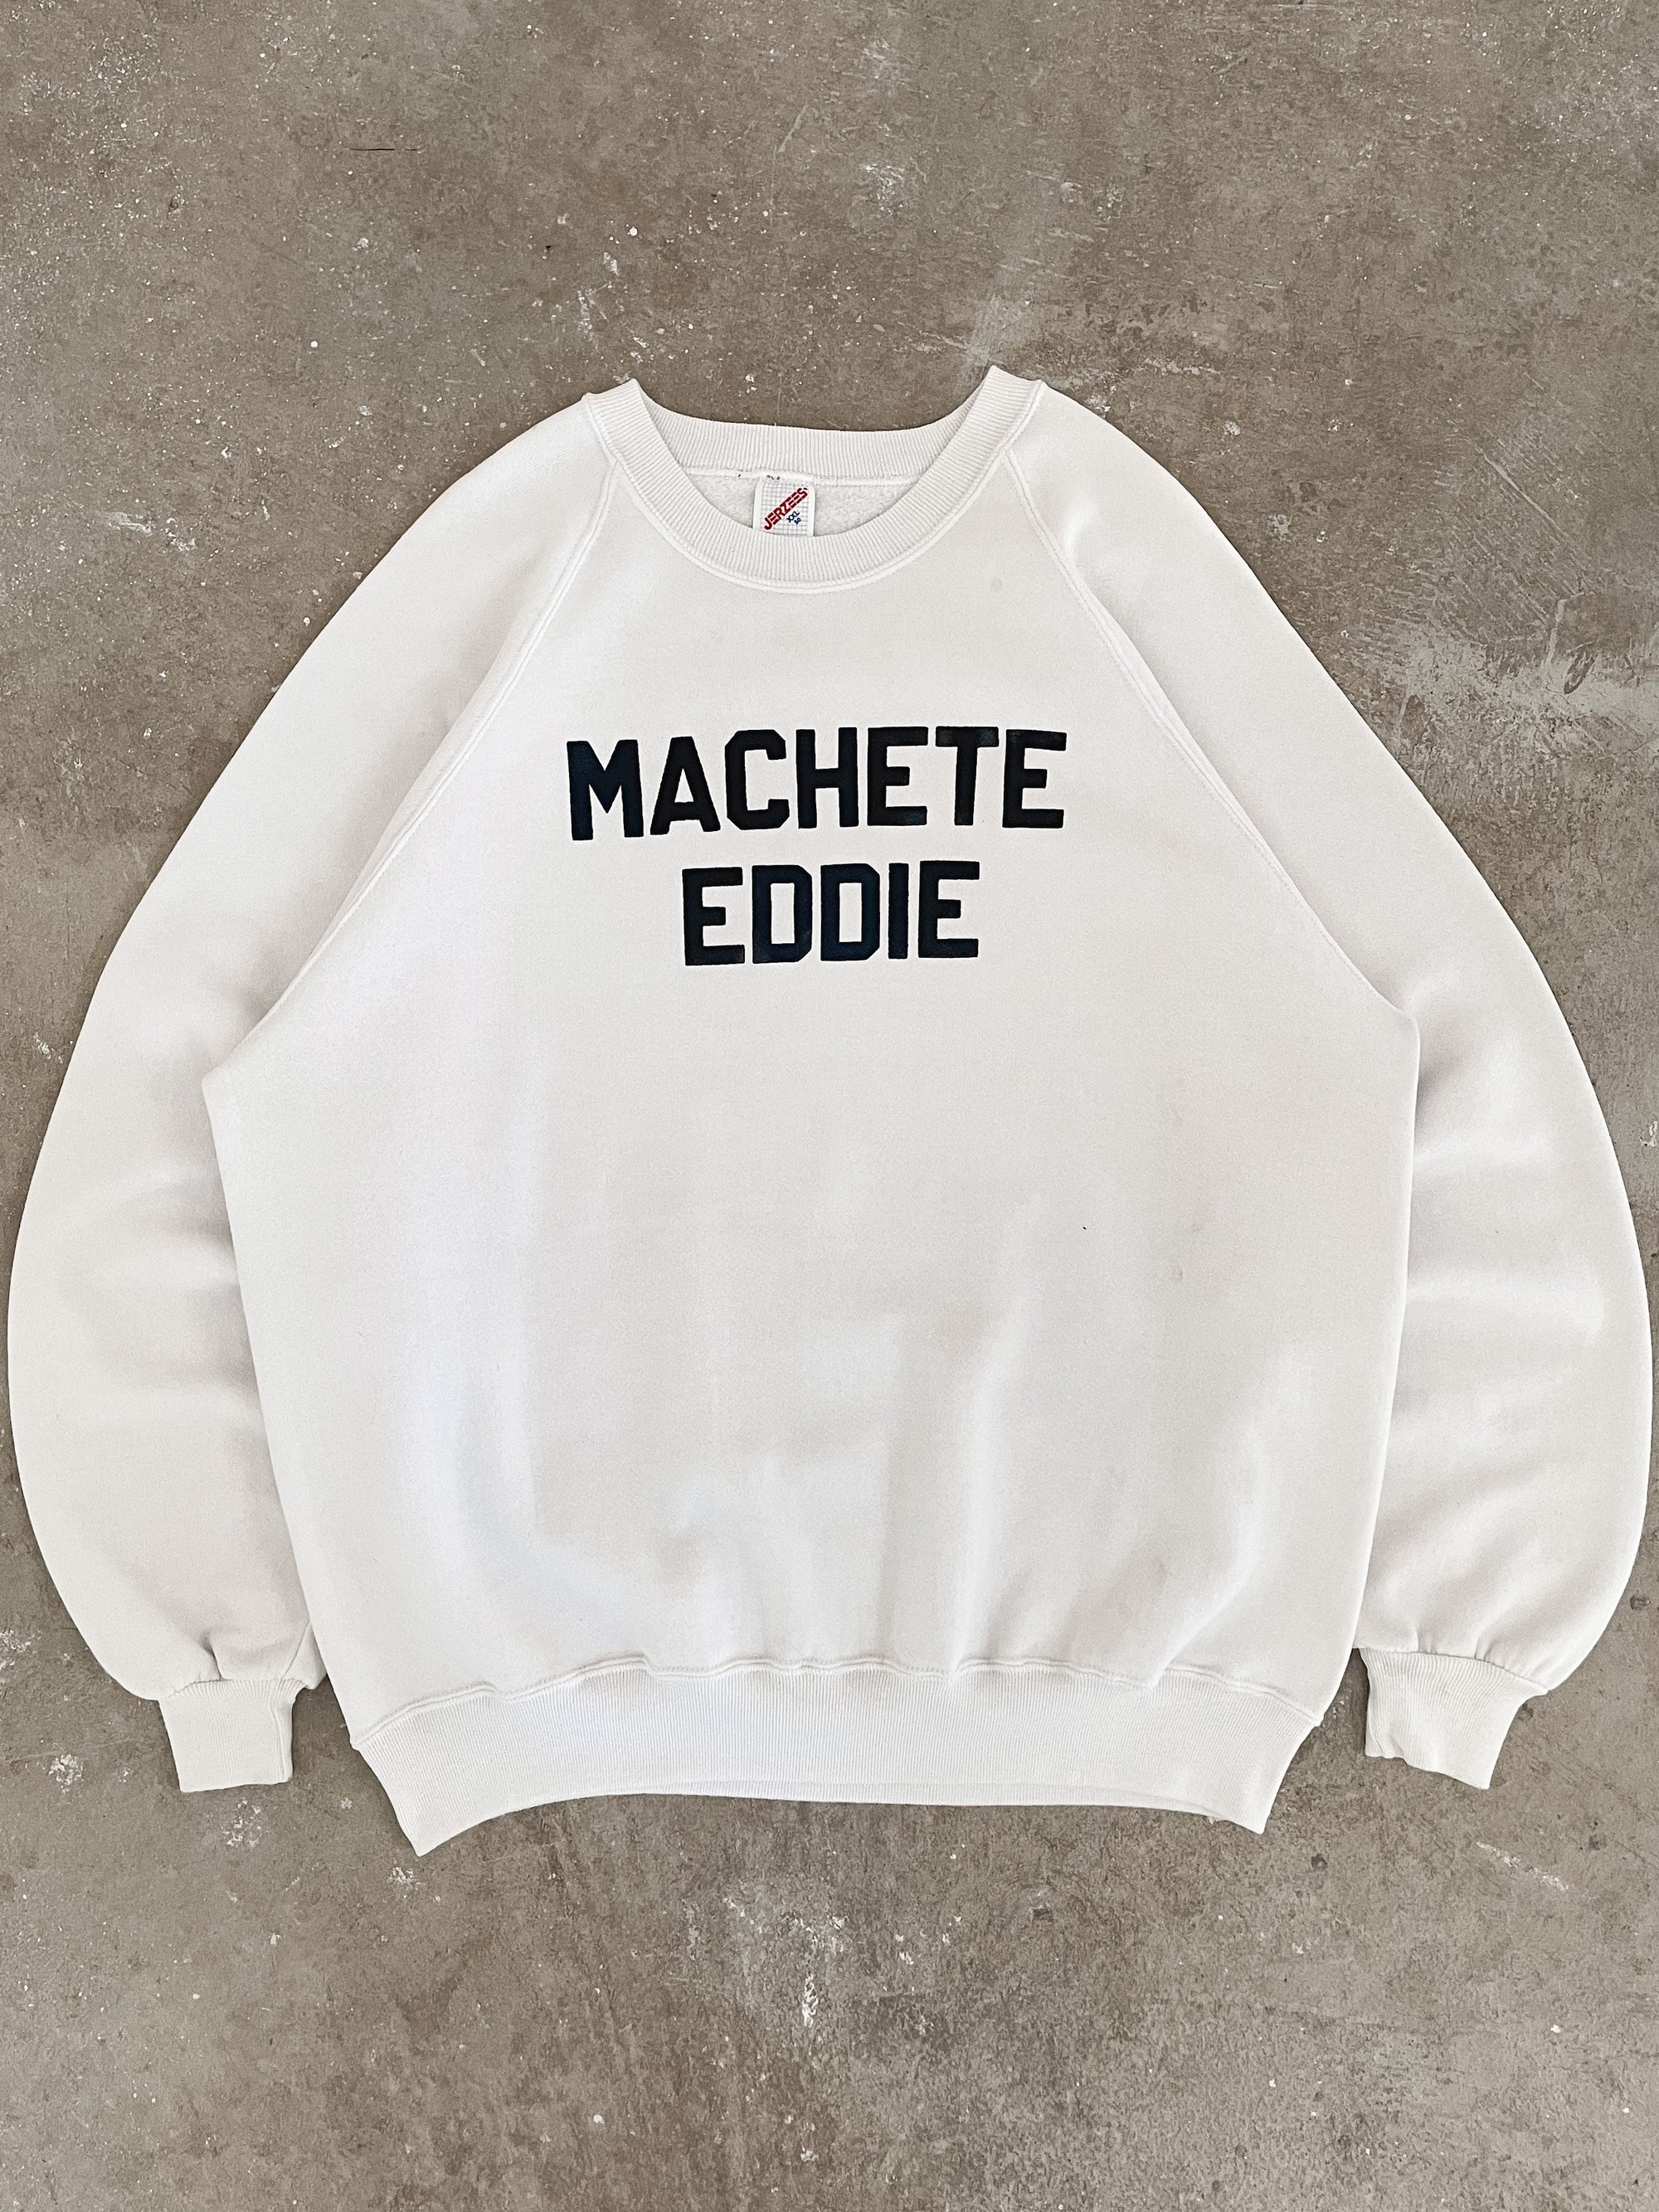 1980s/90s “Machete Eddie” Raglan Sweatshirt (XL)